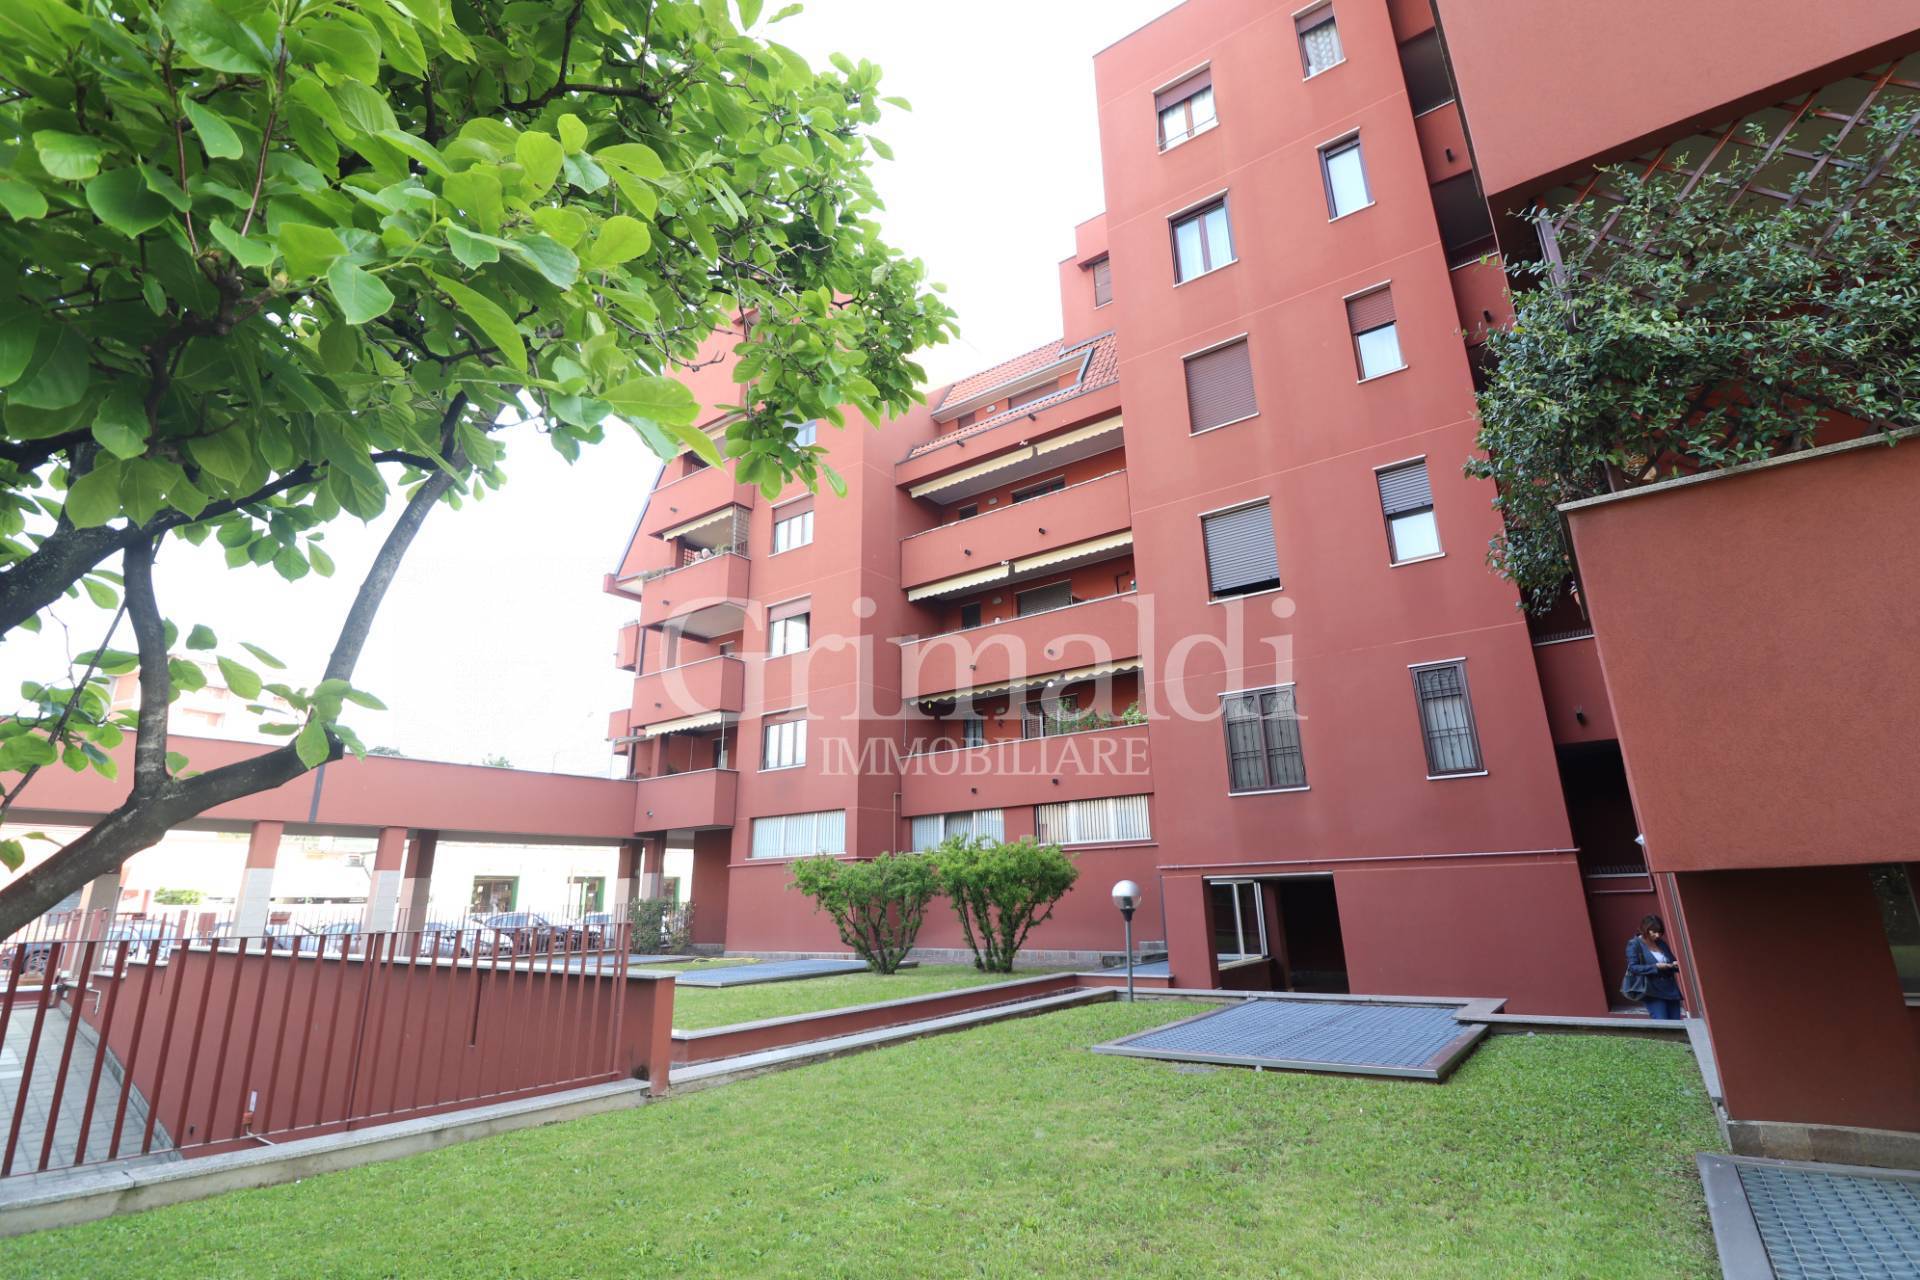 Appartamento in vendita a Arcore, 3 locali, prezzo € 169.000 | PortaleAgenzieImmobiliari.it